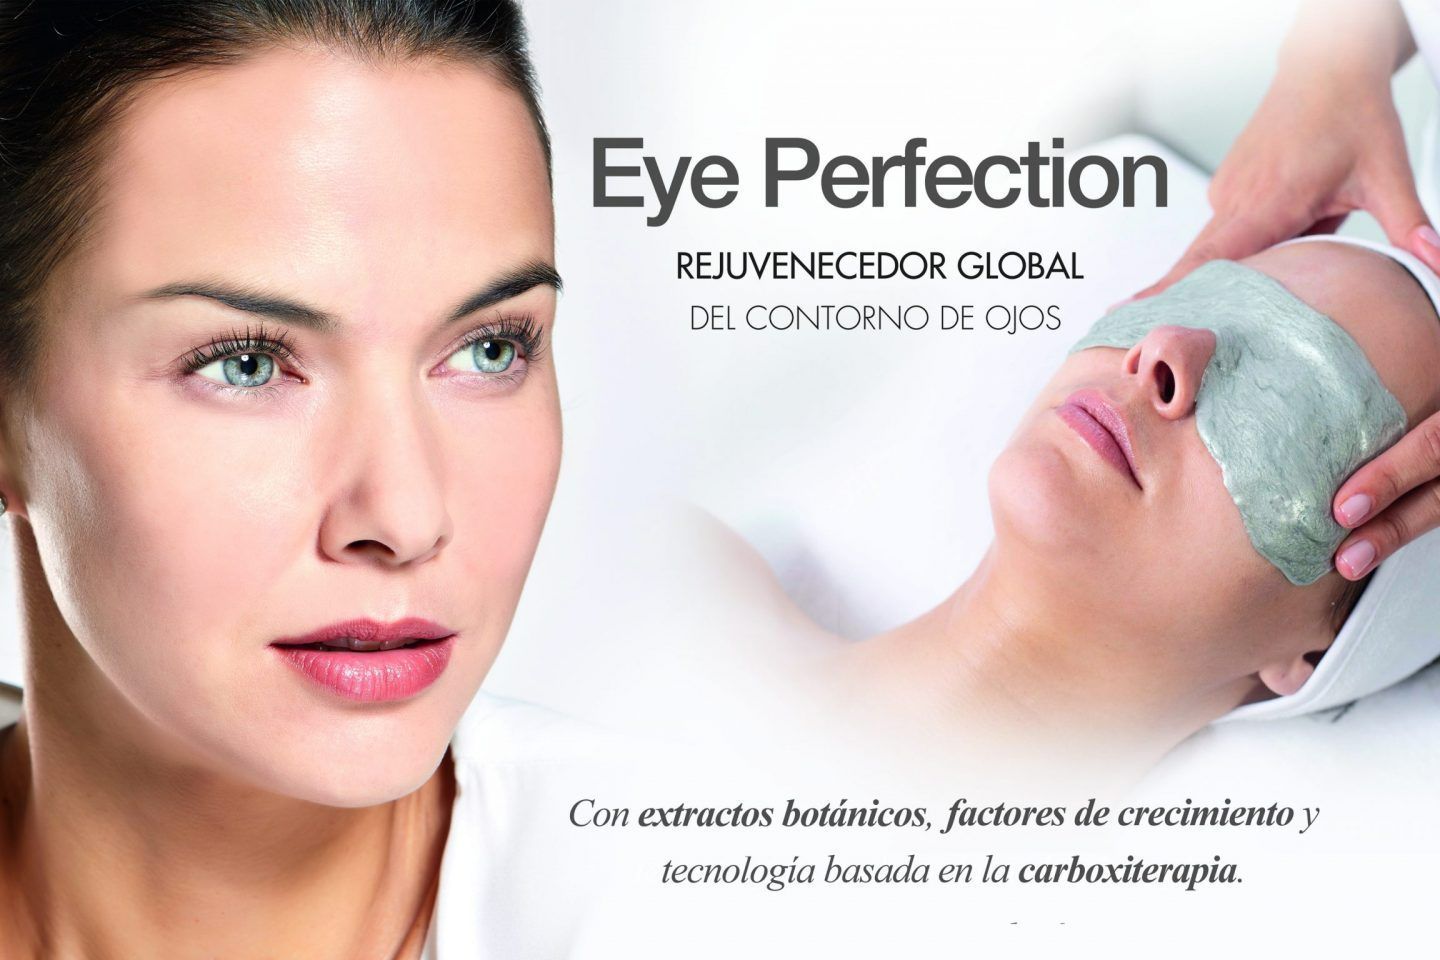 Eye Perfection Treatment portfolio